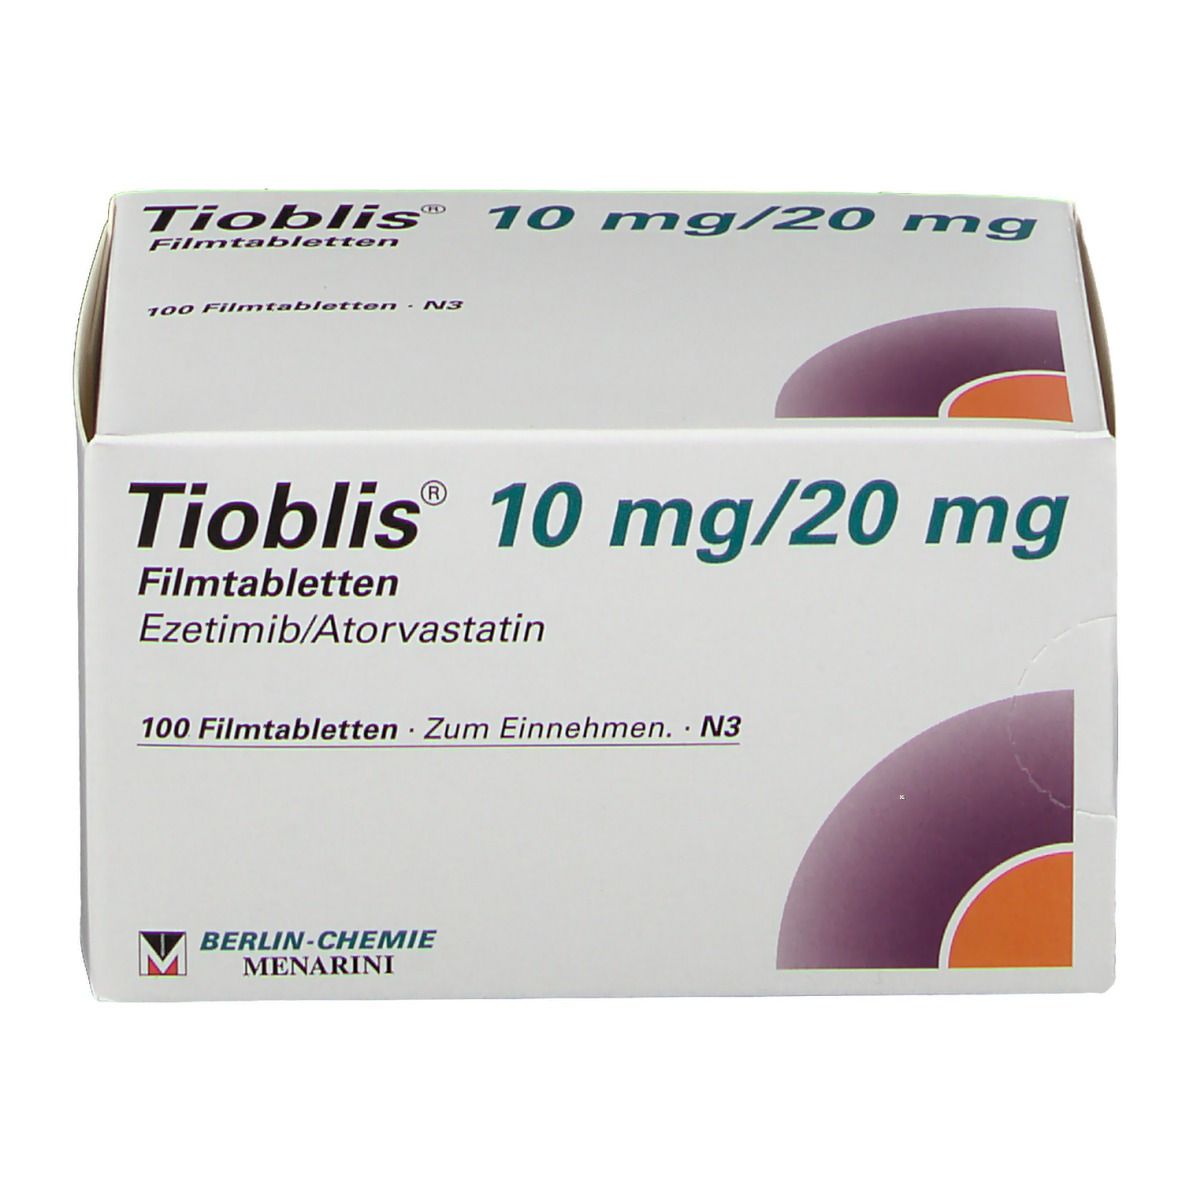 Tioblis® 10 mg/20 mg